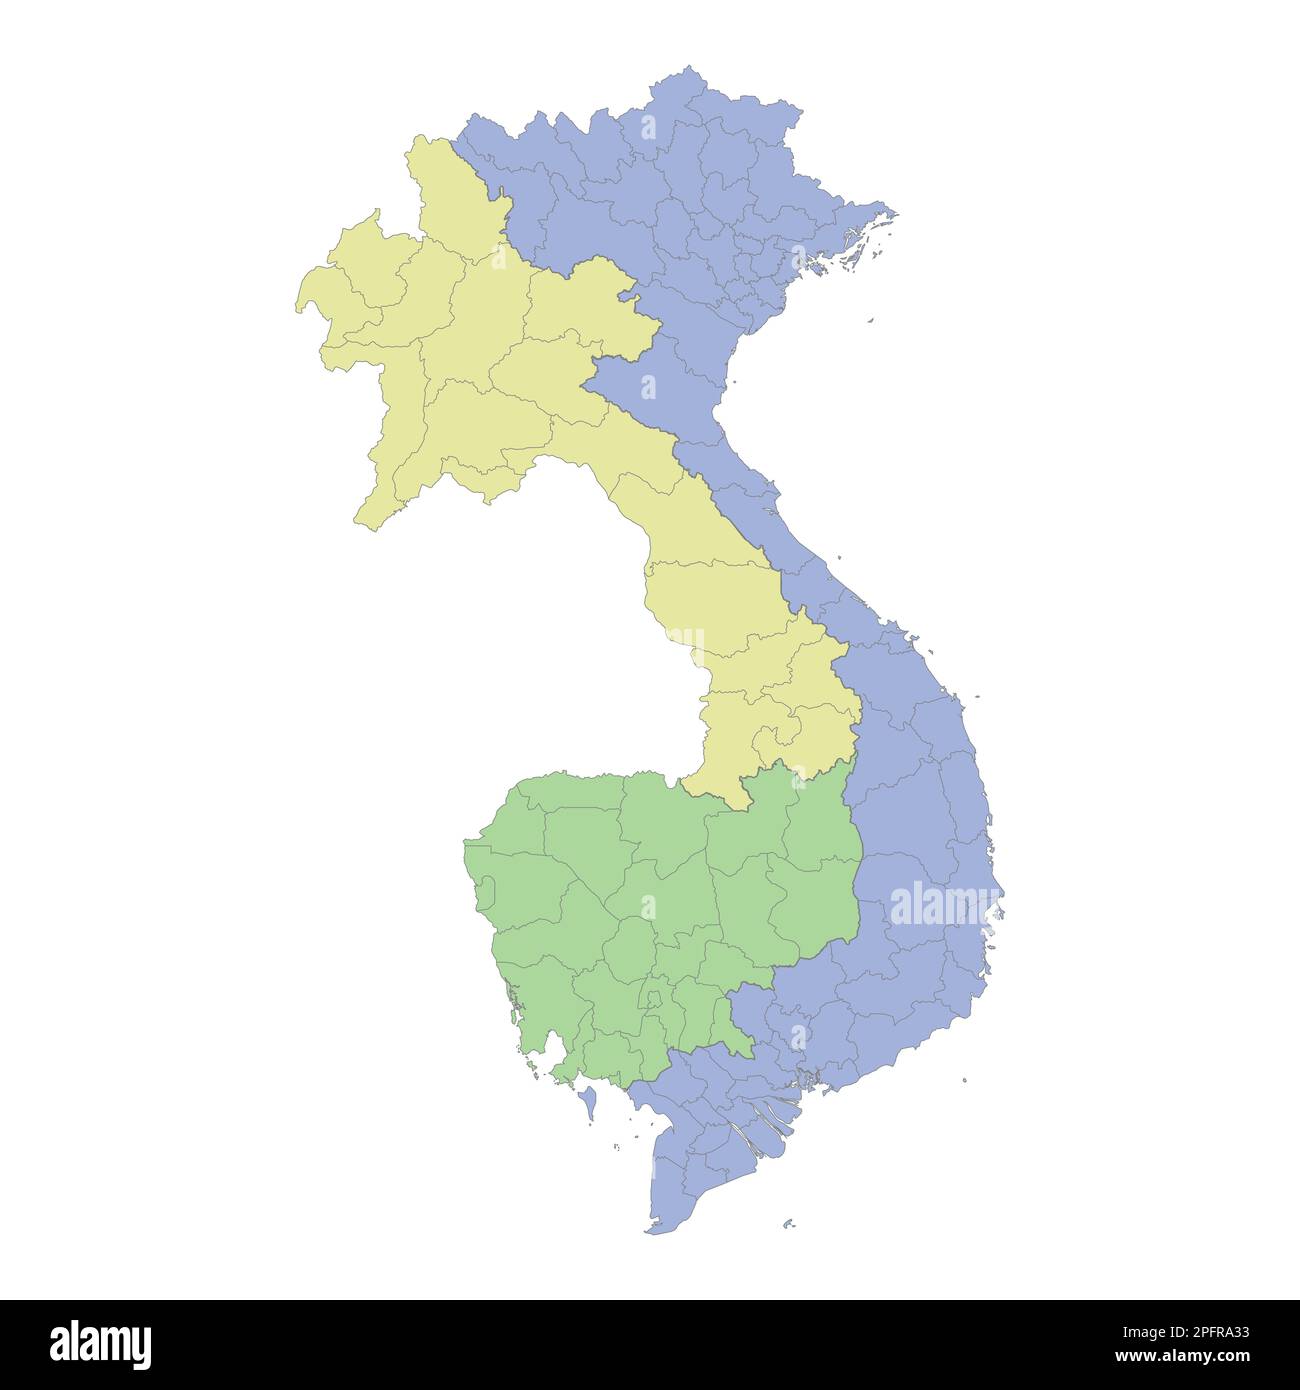 Mappa politica di alta qualità del Vietnam, Cambogia e Laos con i confini delle regioni o province. Illustrazione vettoriale Illustrazione Vettoriale